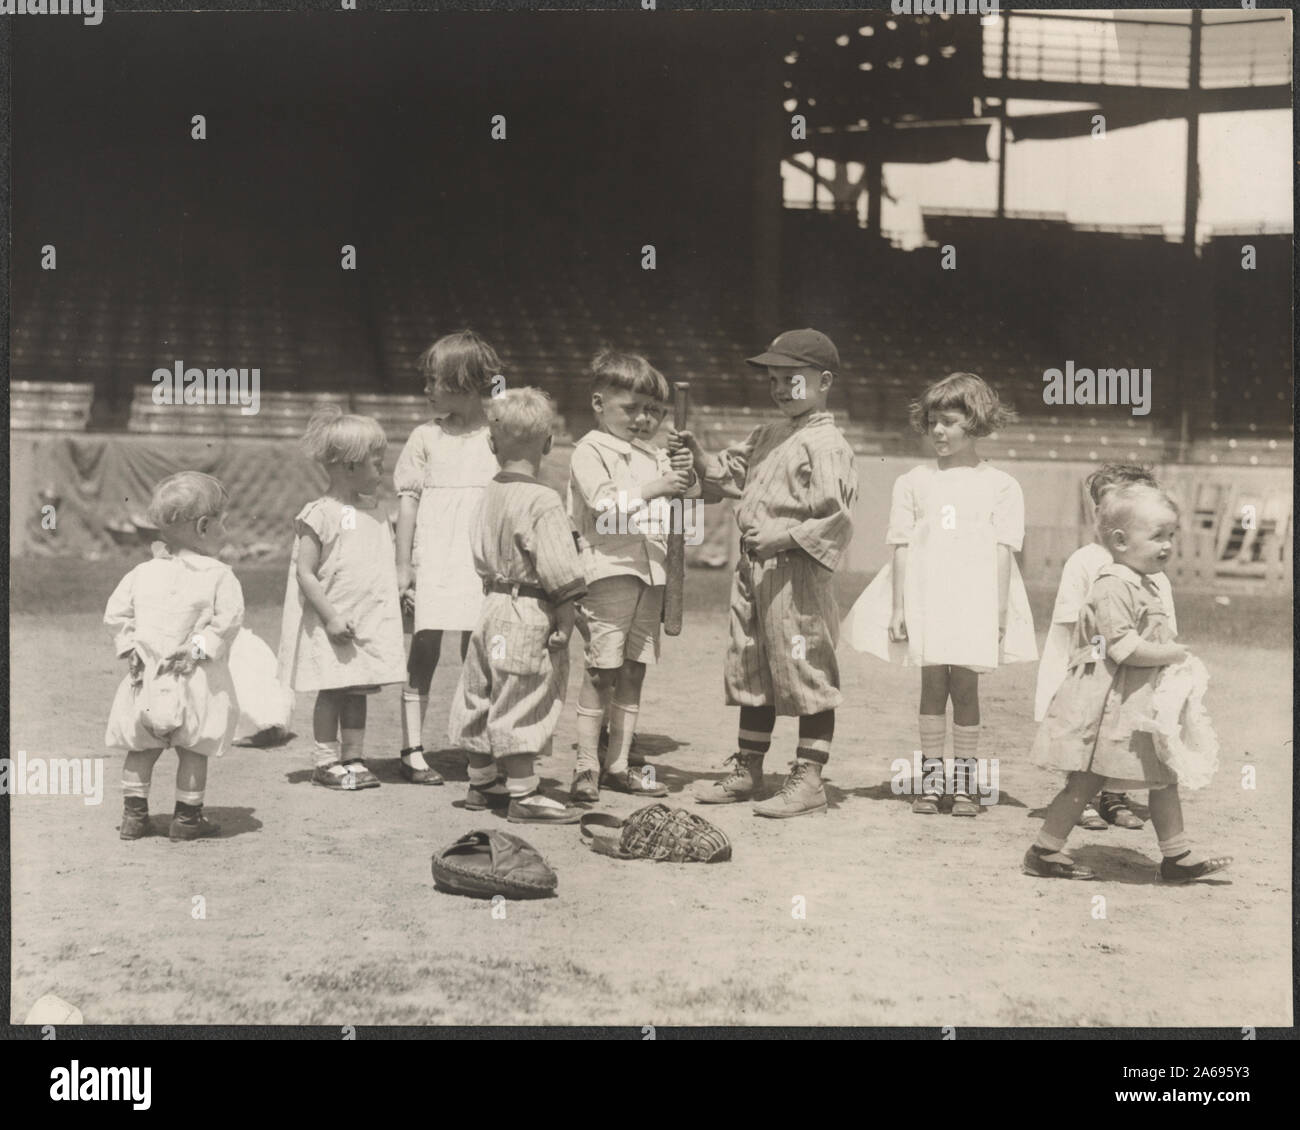 Los muchachos y muchachas en el campo de béisbol en un estadio de grandes ligas Foto de stock